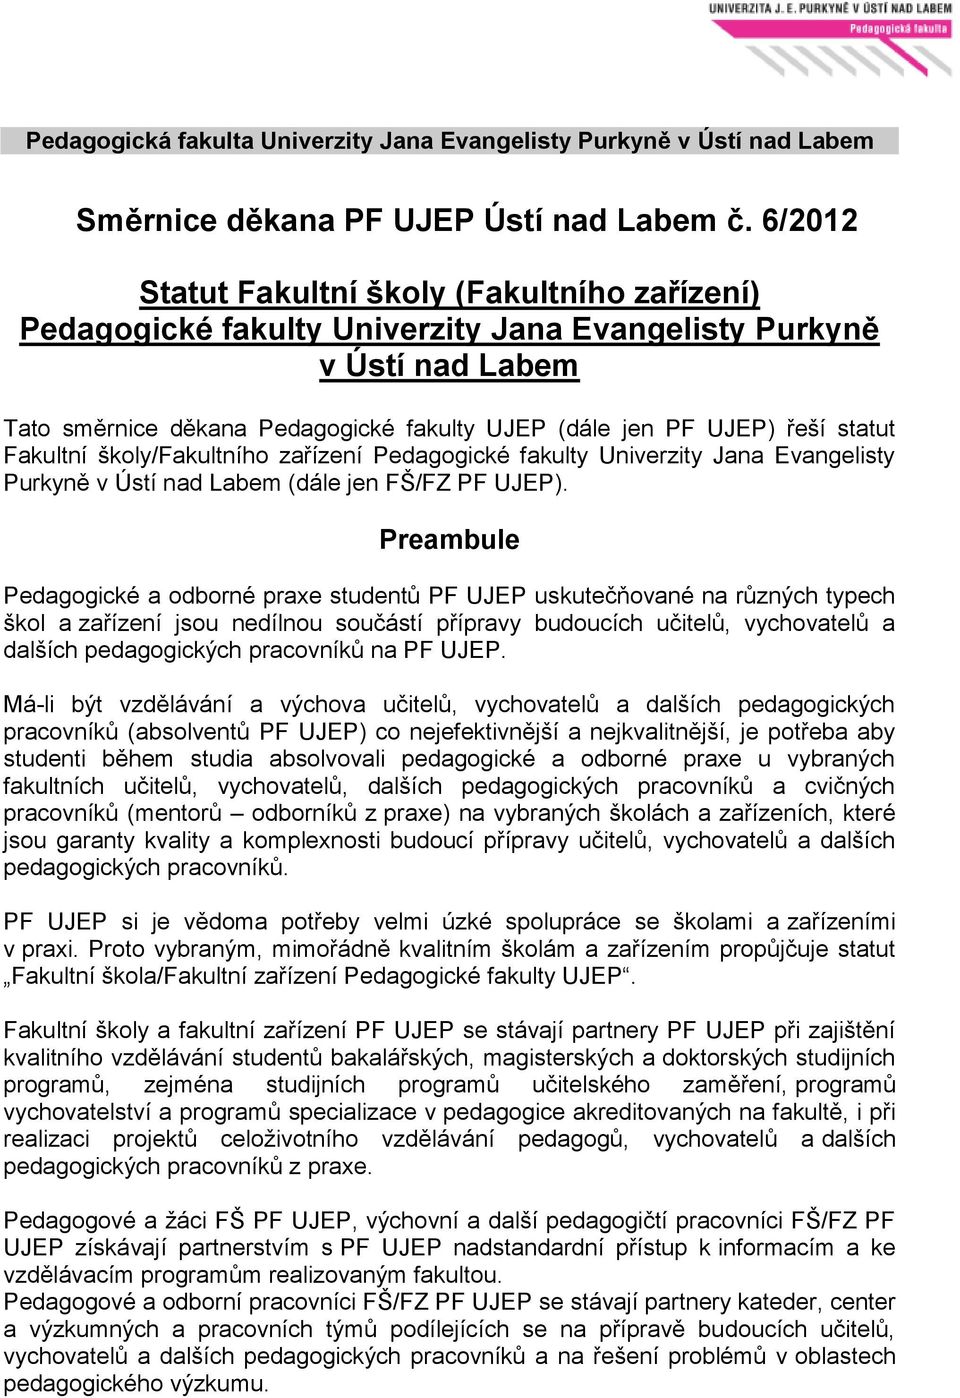 statut Fakultní školy/fakultního zařízení Pedagogické fakulty Univerzity Jana Evangelisty Purkyně v Ústí nad Labem (dále jen FŠ/FZ PF UJEP).